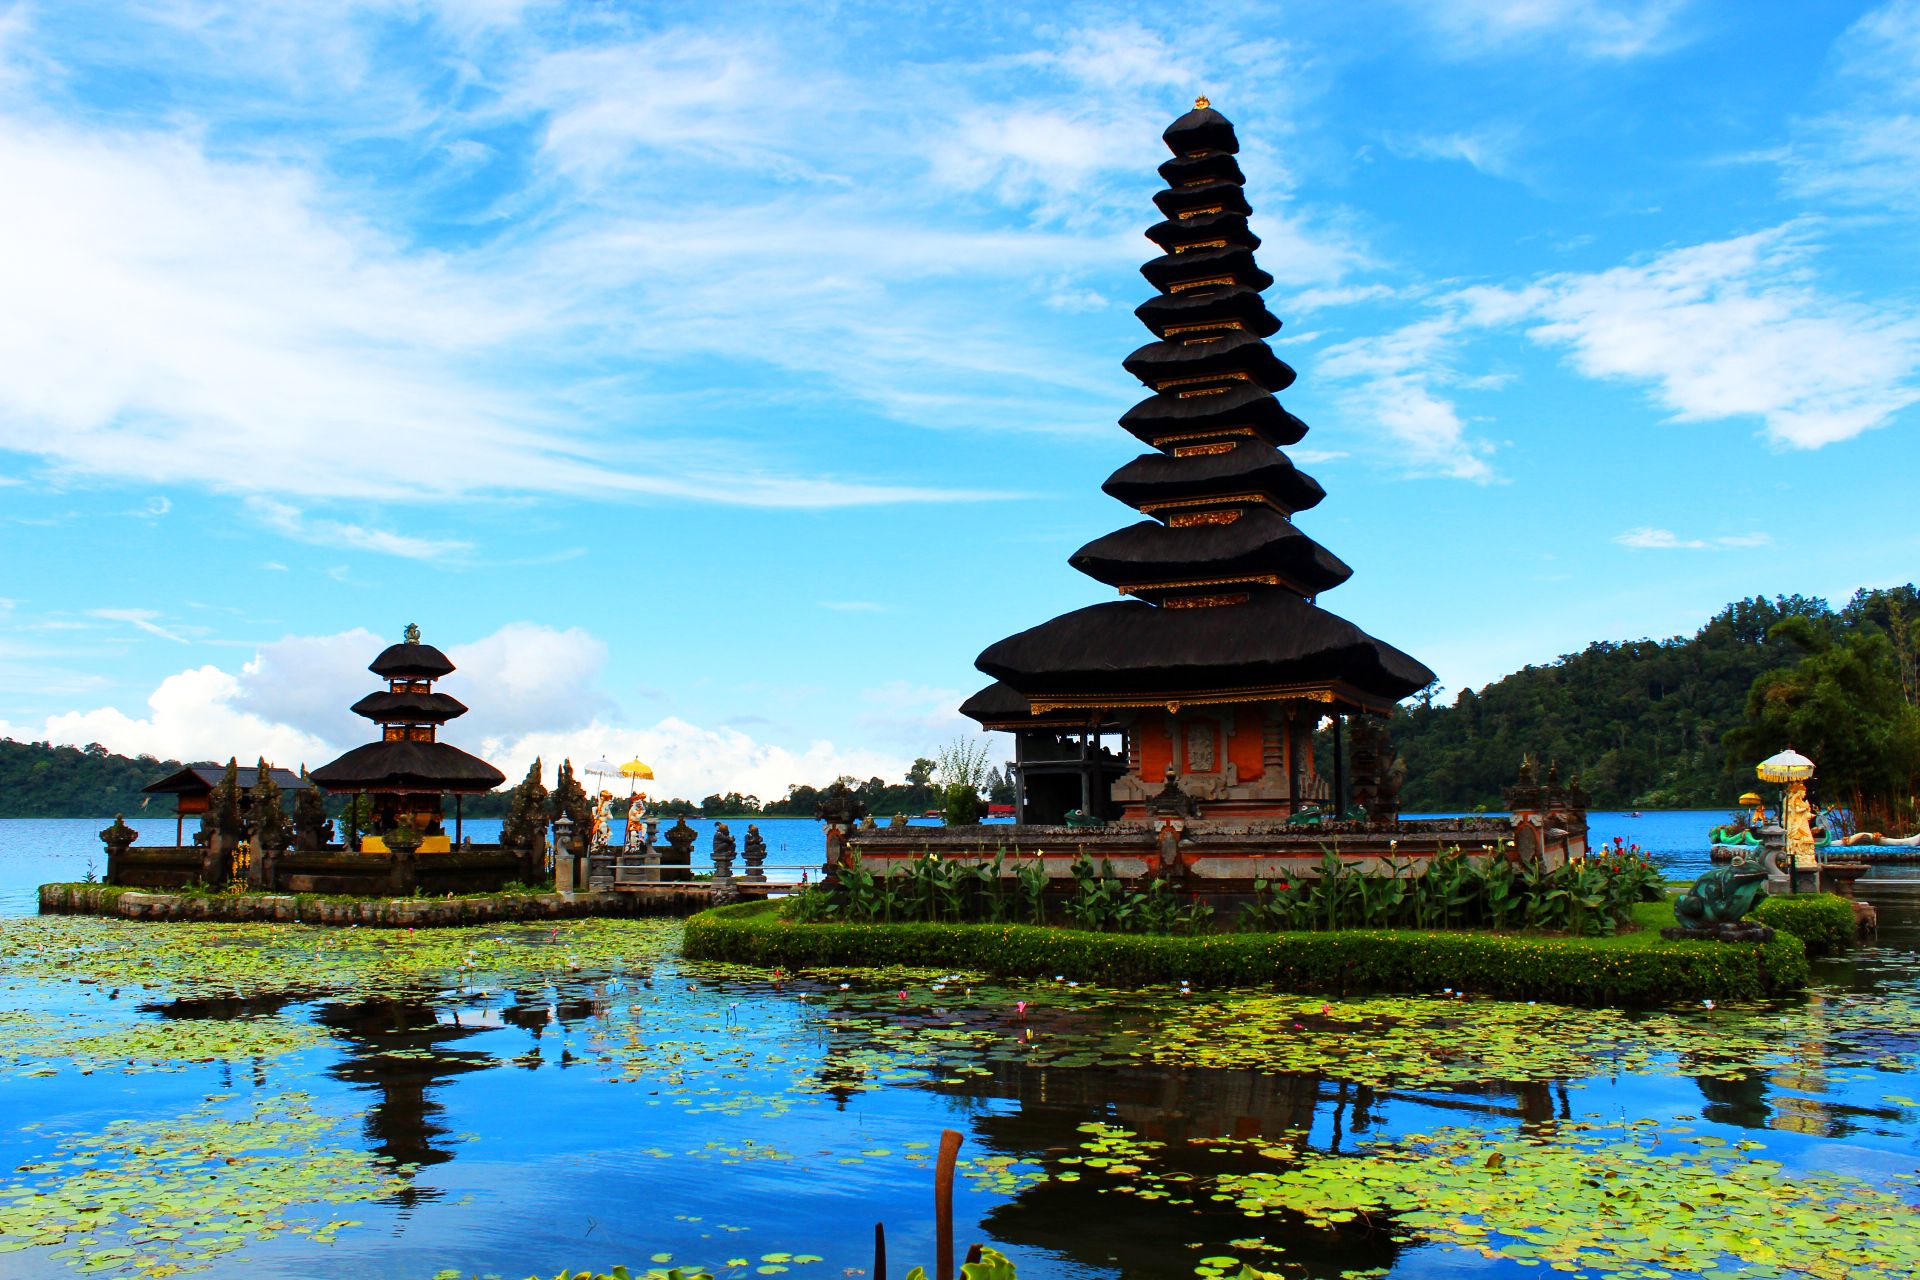 تصویر تماشایی معبد هندو در جزیره بالی کشور اندونزی